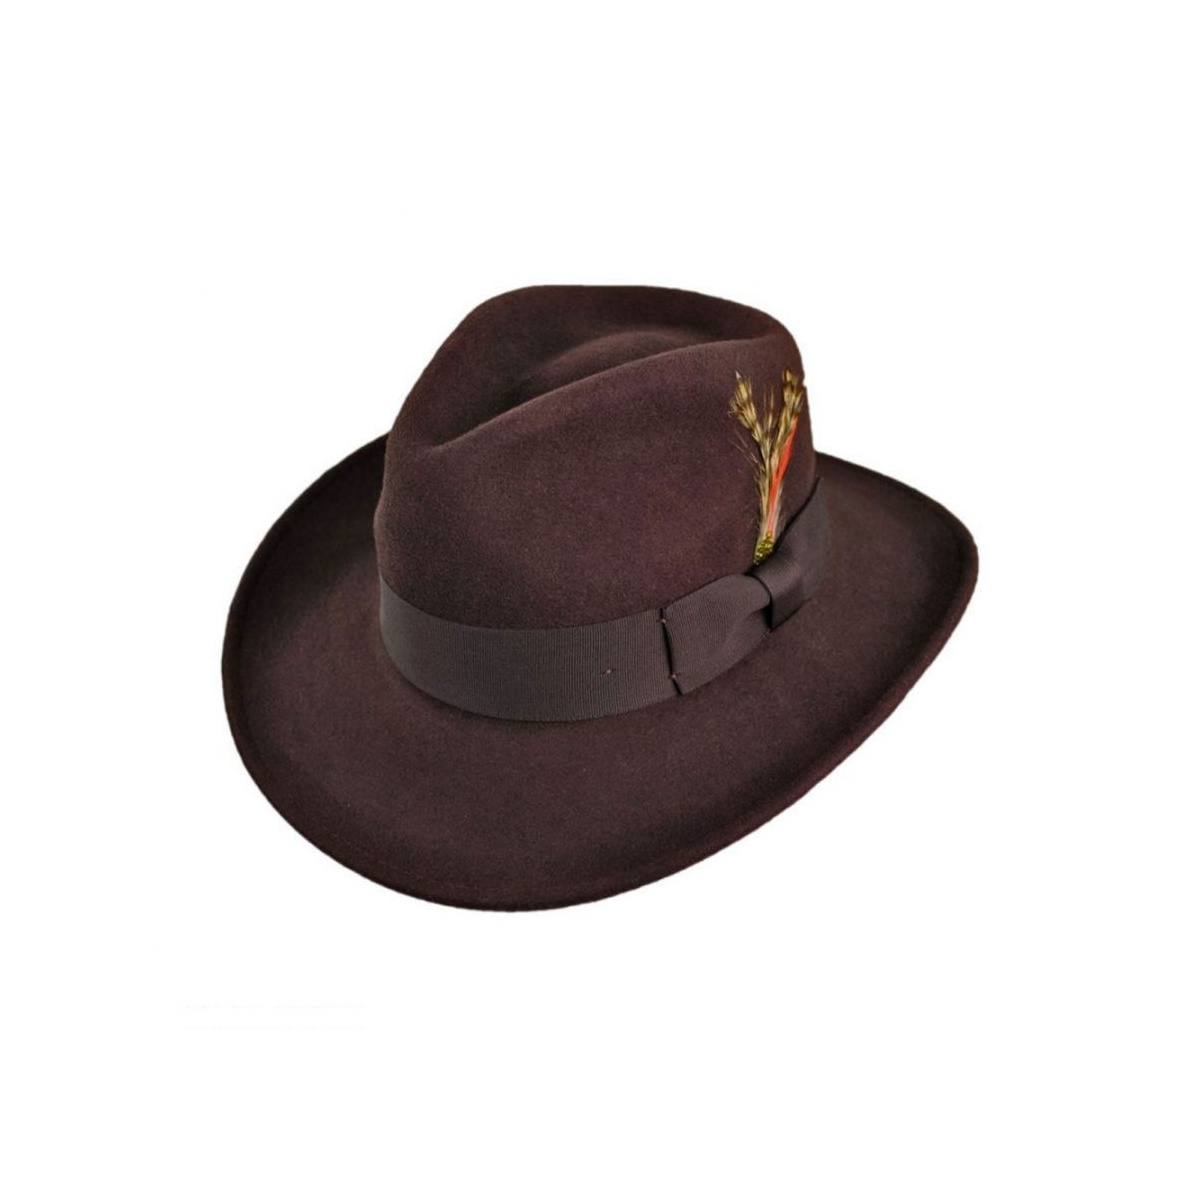 Harisson Ford et le fameux chapeau d'Indiana Jones.